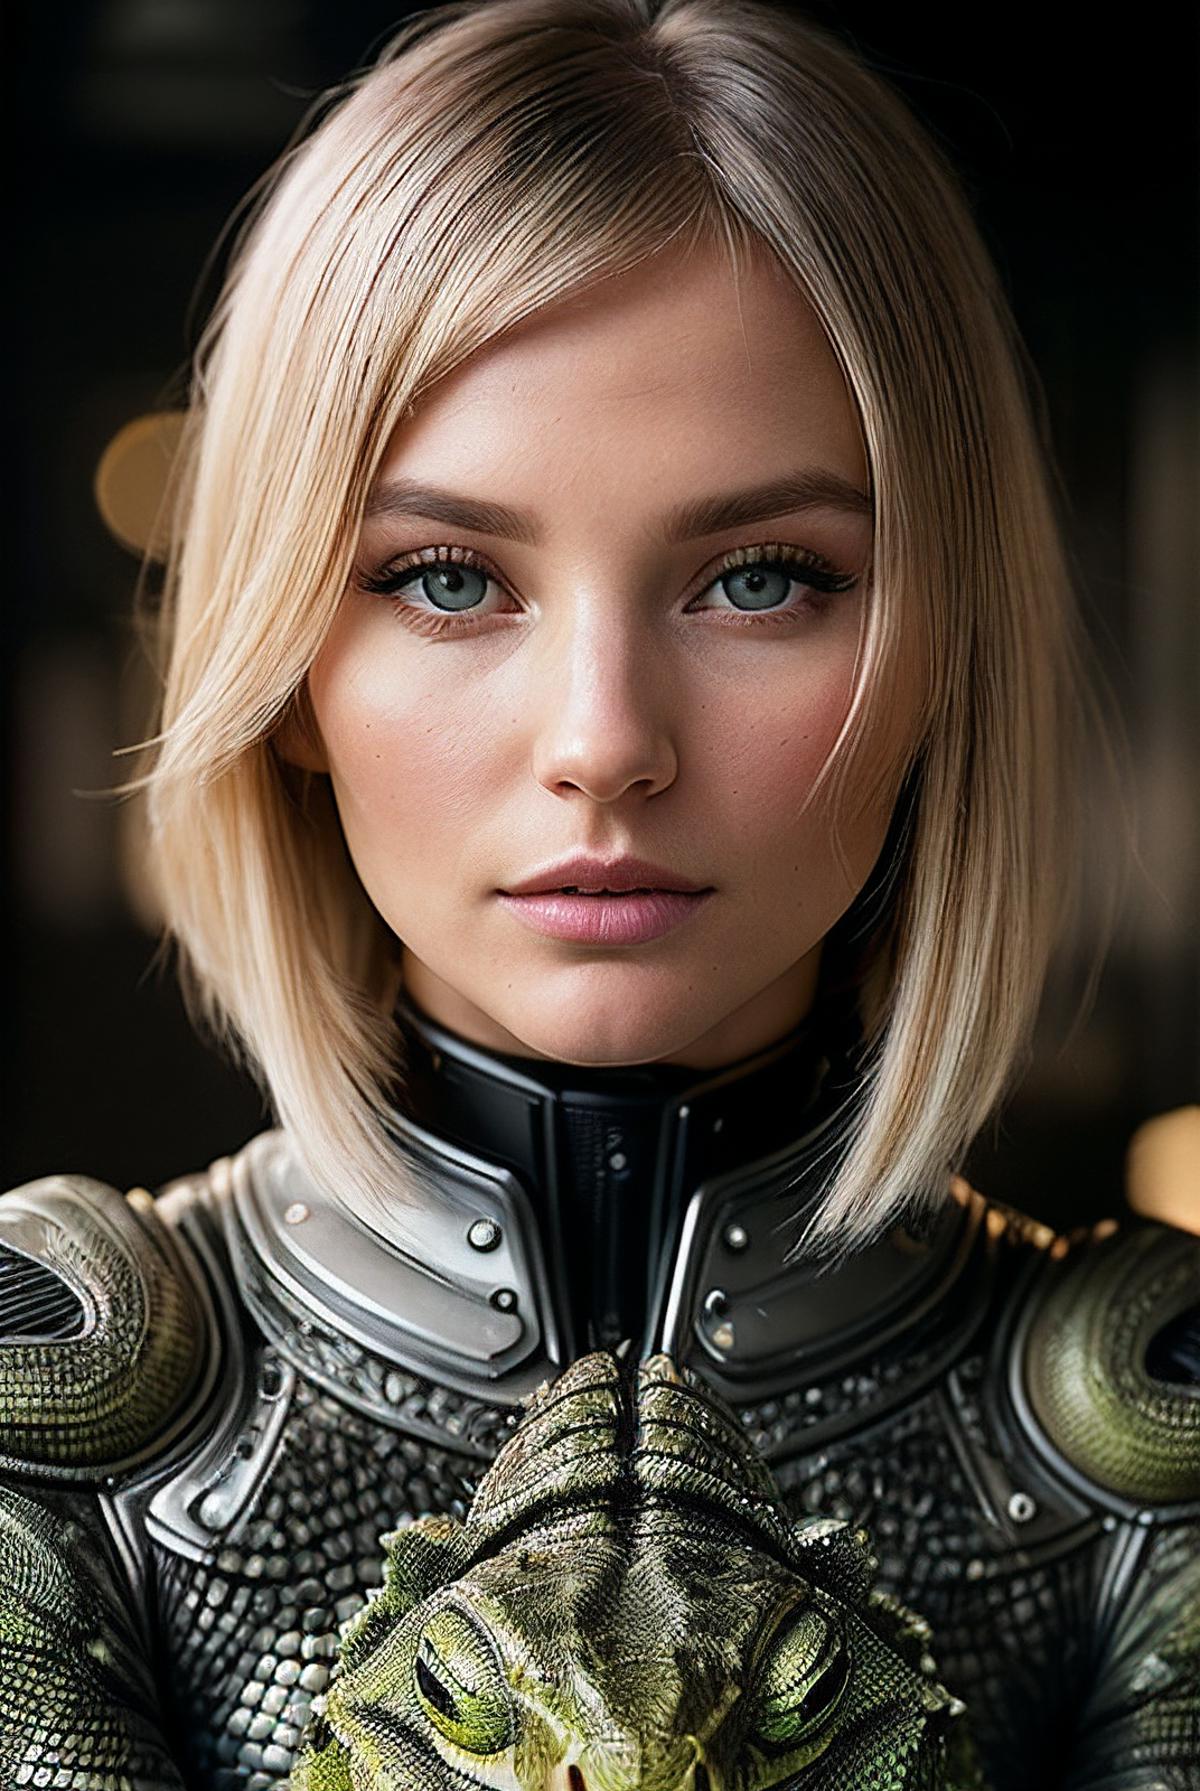 AI model image by ElizaPottinger